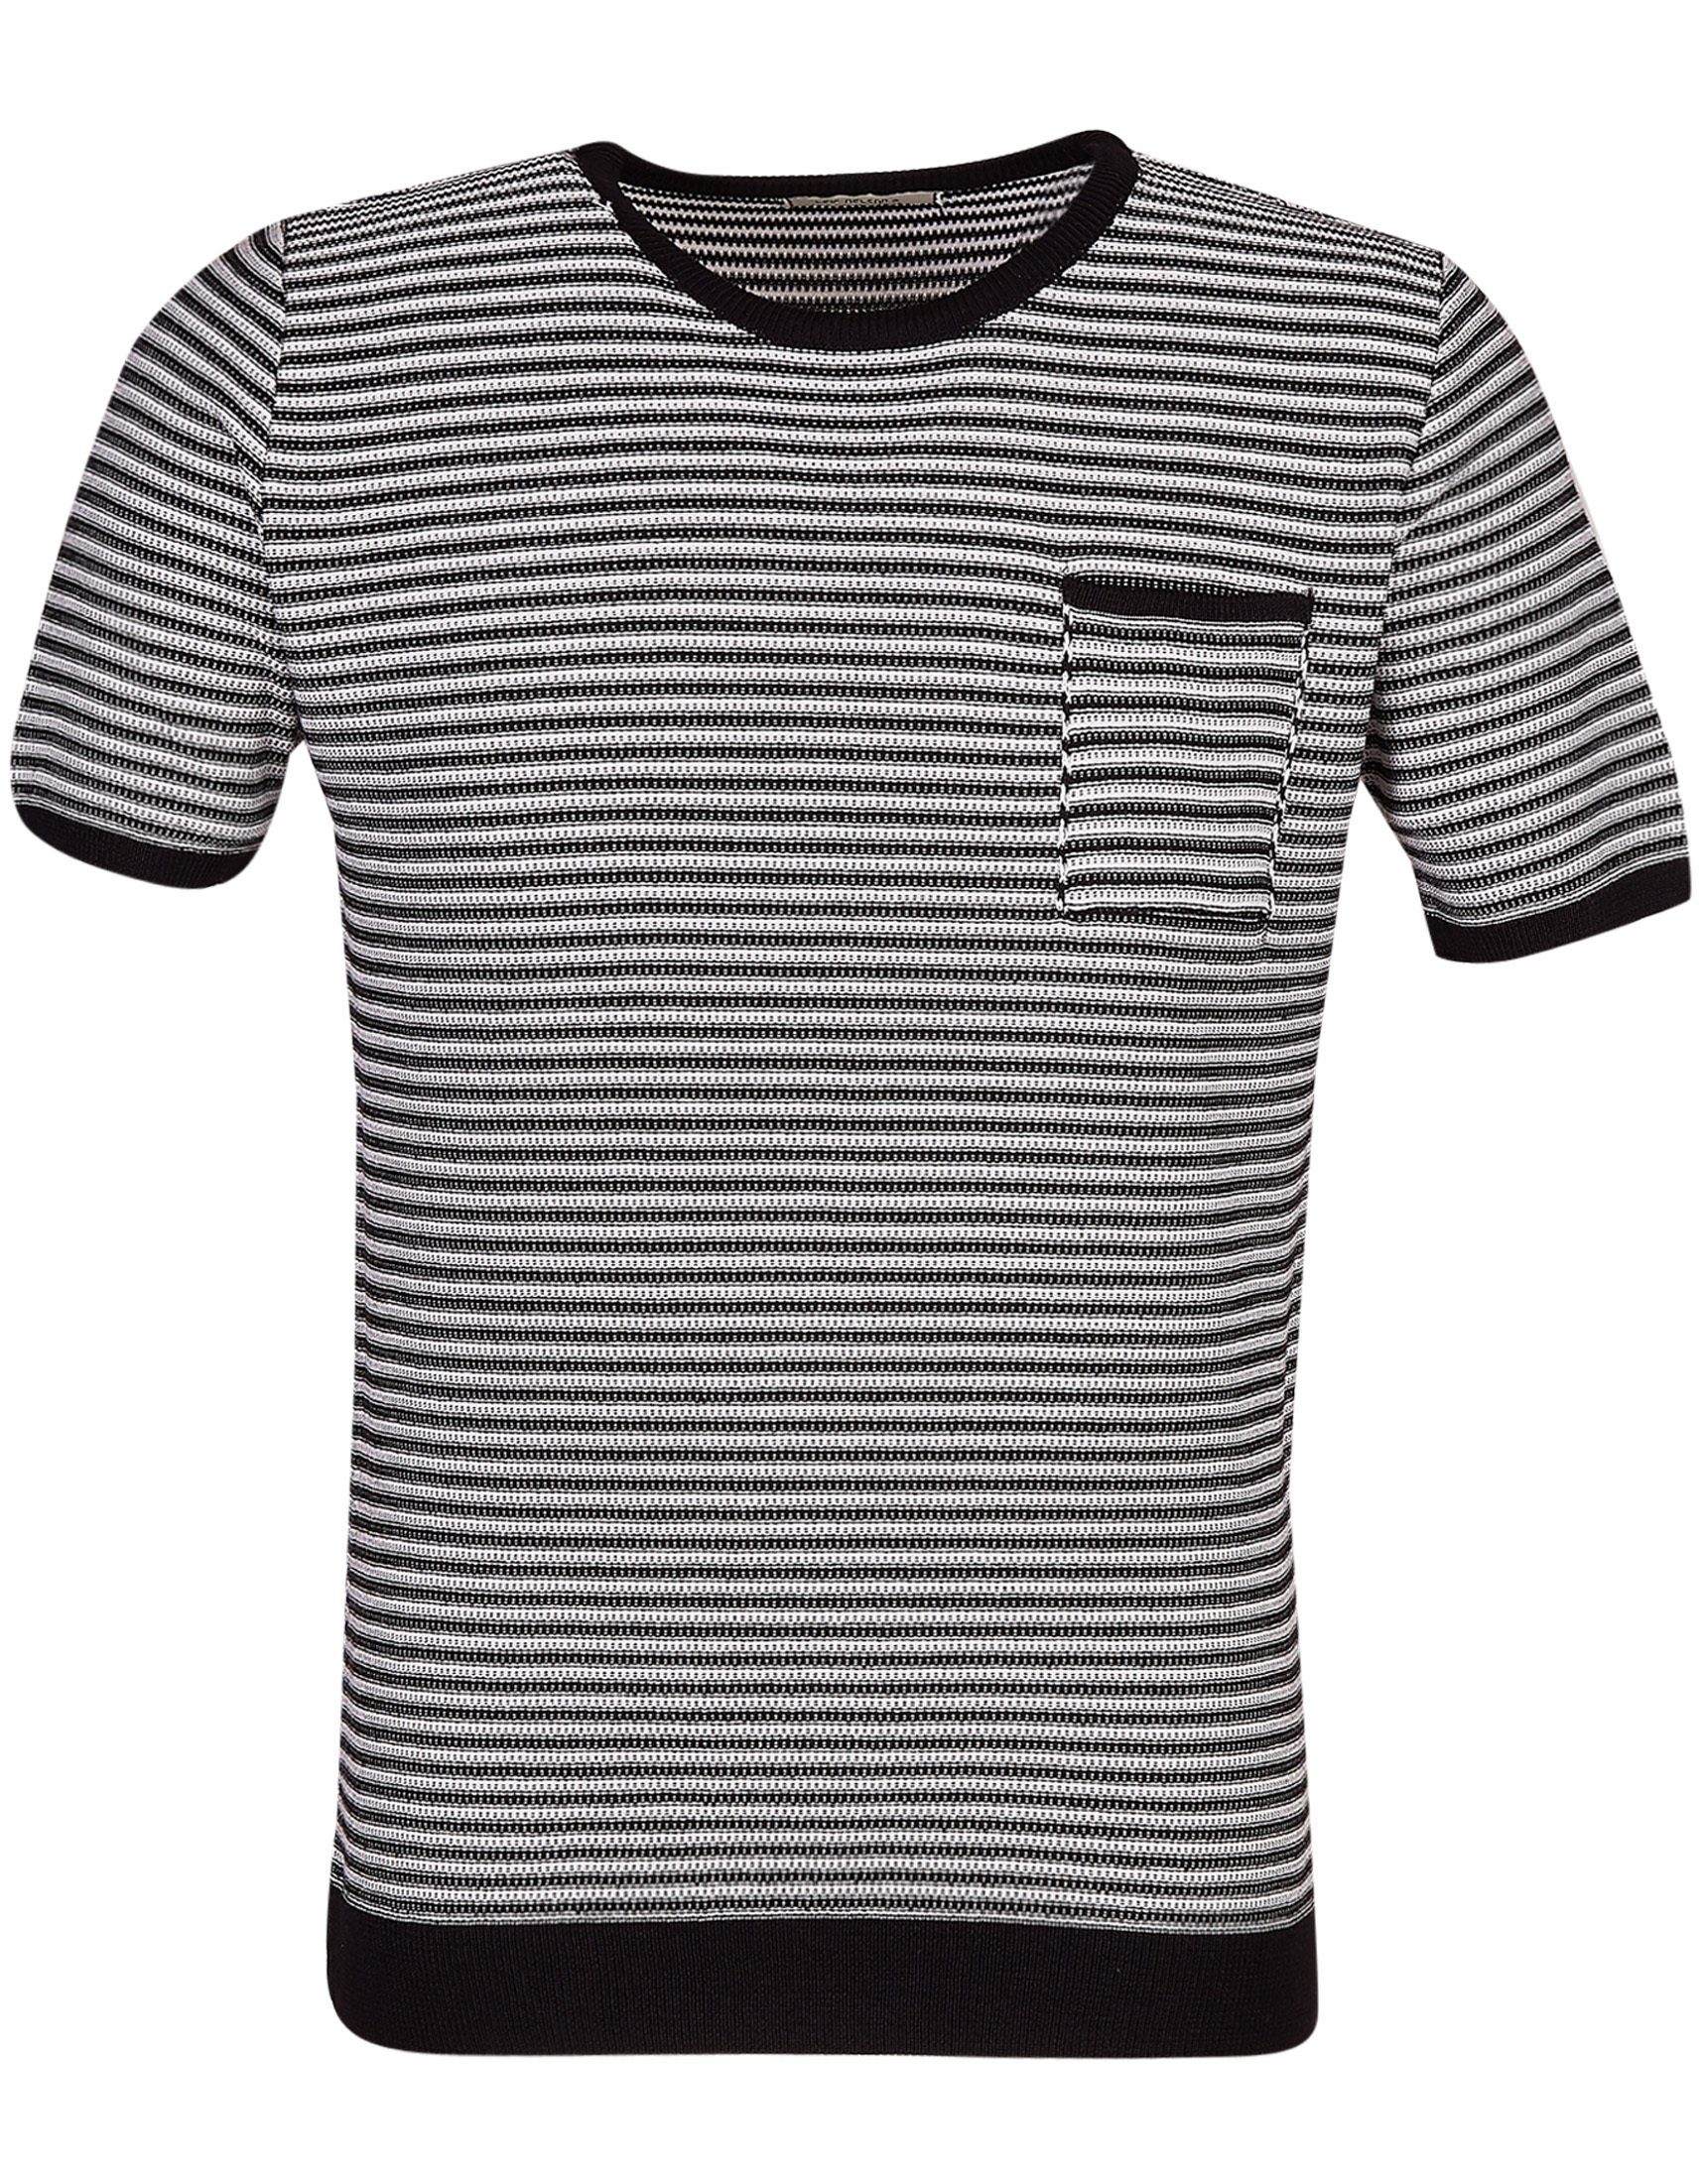 Leif normal schwarz-ecruweiß Nelson Rundhals T-Shirt LN-7650